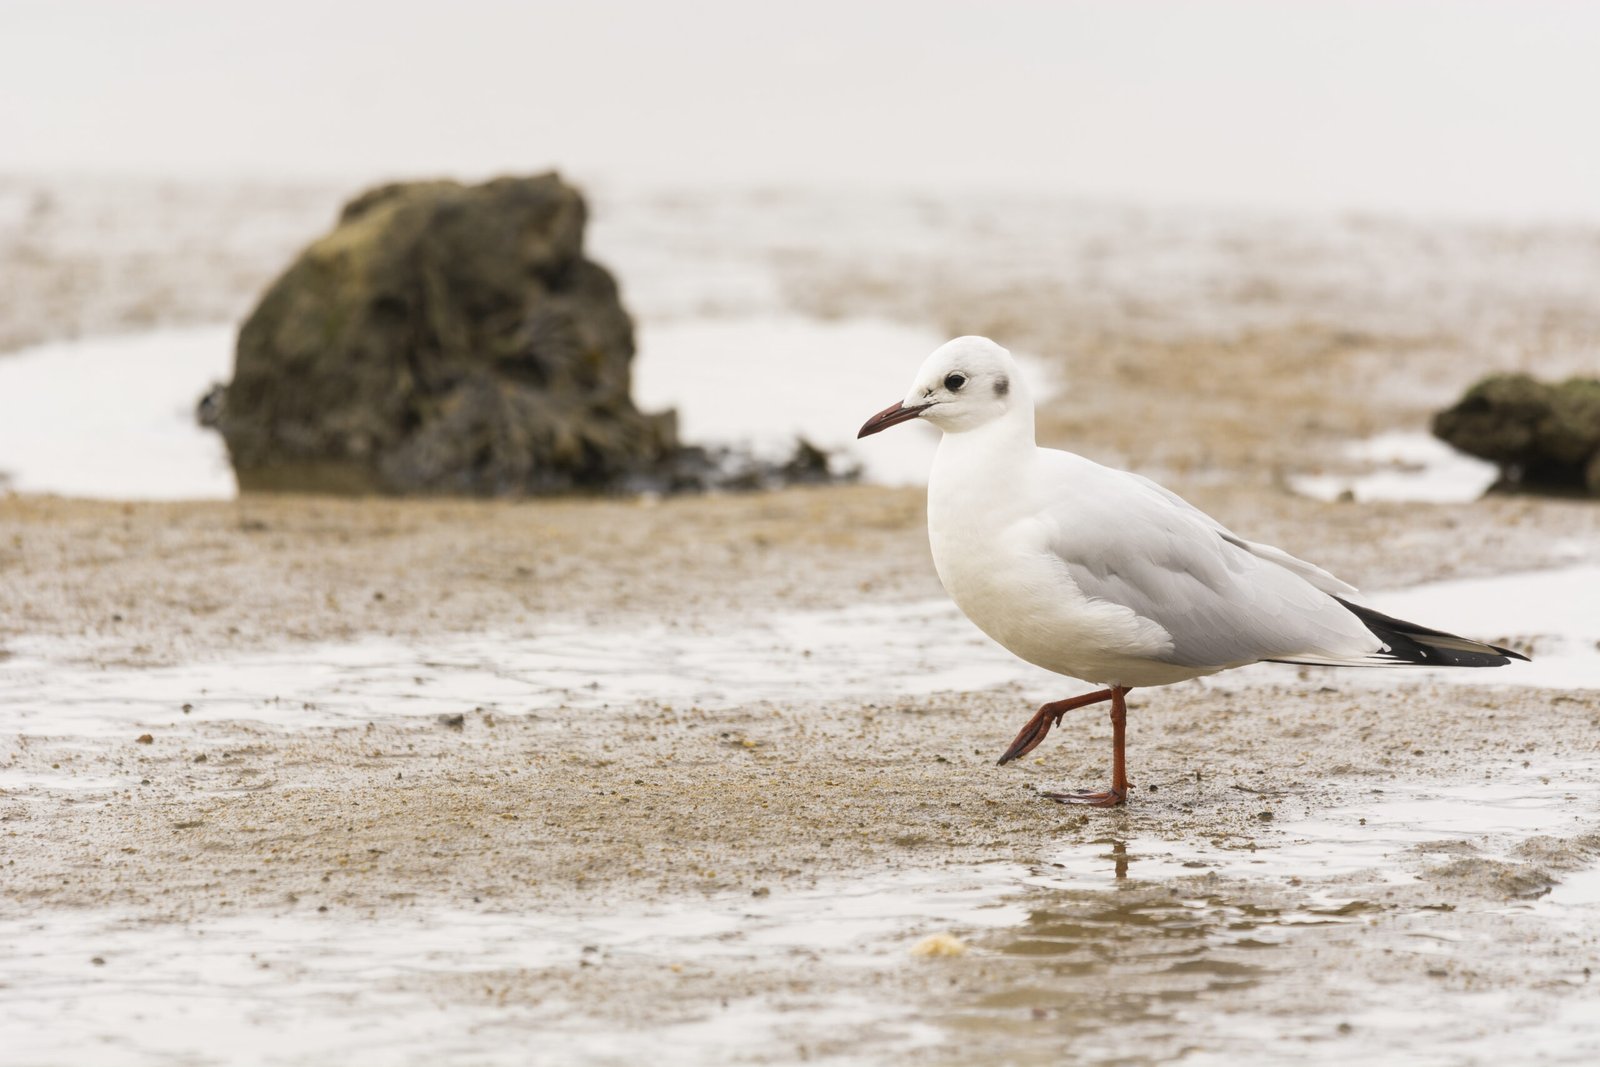 A closeup shot of a Seagull on a beach